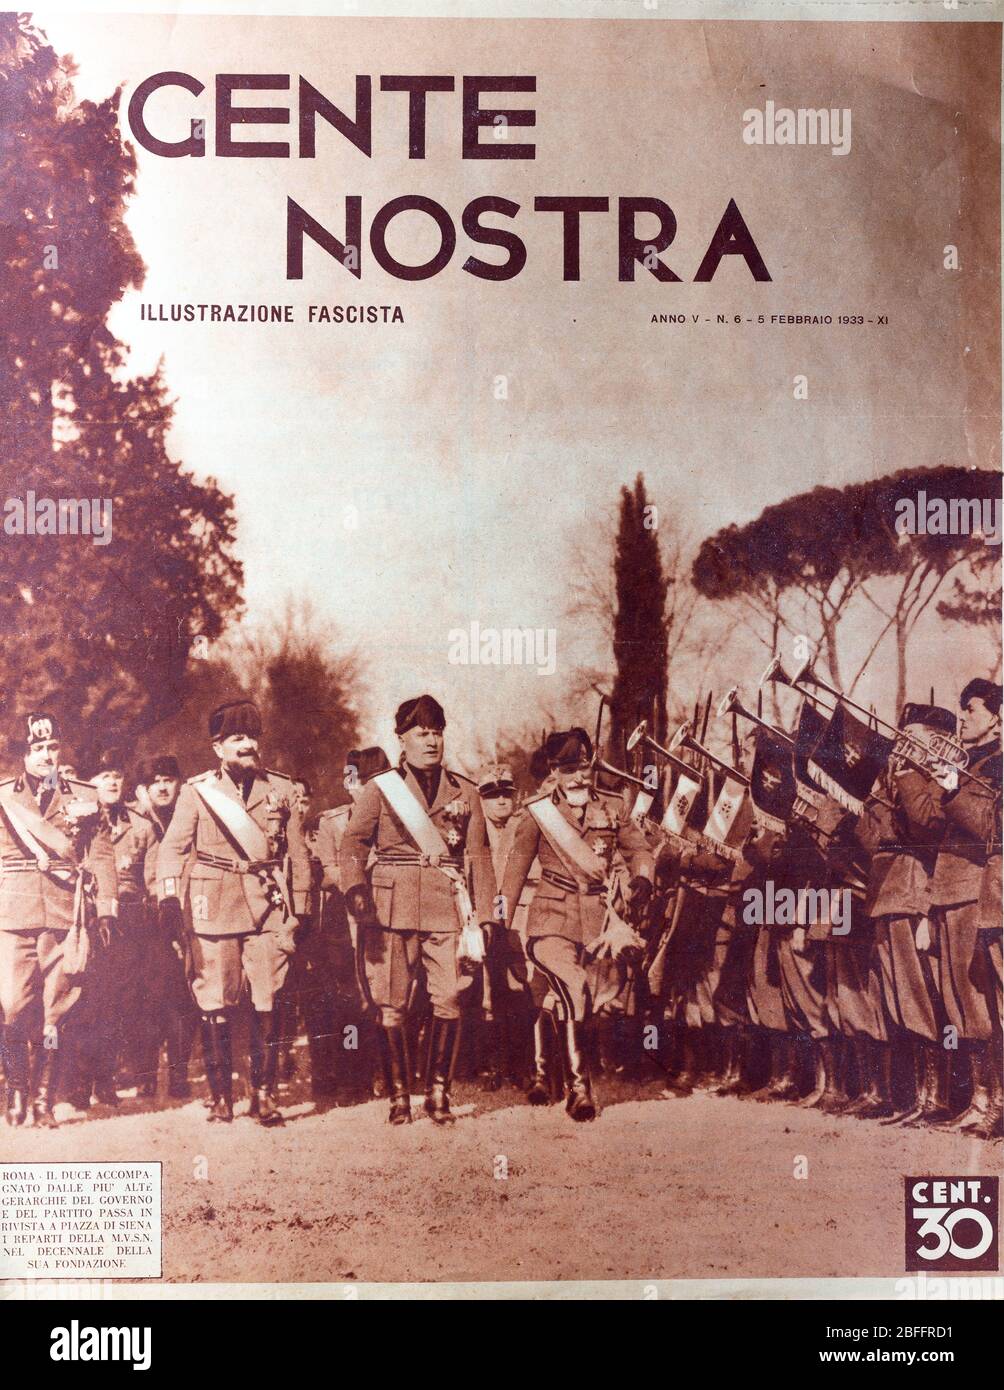 Benito Mussolini, illustration from Italian Fascist newspaper Gente Nostra, Illustrazione fascista, Italy, 1933 Stock Photo